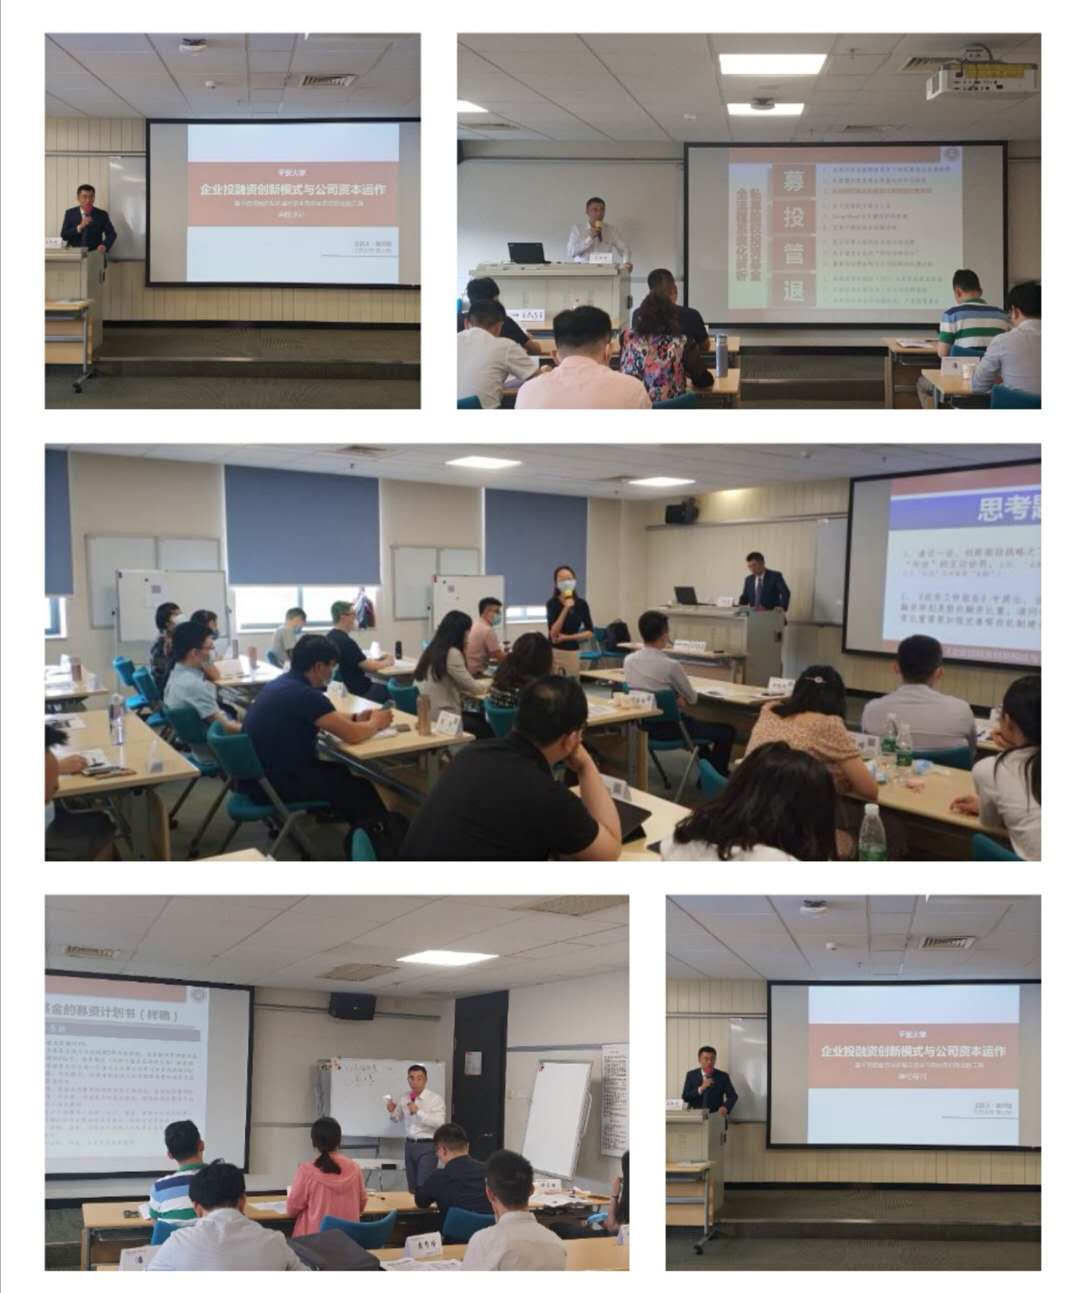 吴梓境老师7月6-7日为平安集团讲授了《投融资与私募基金》的课程，非常圆满的结束了！